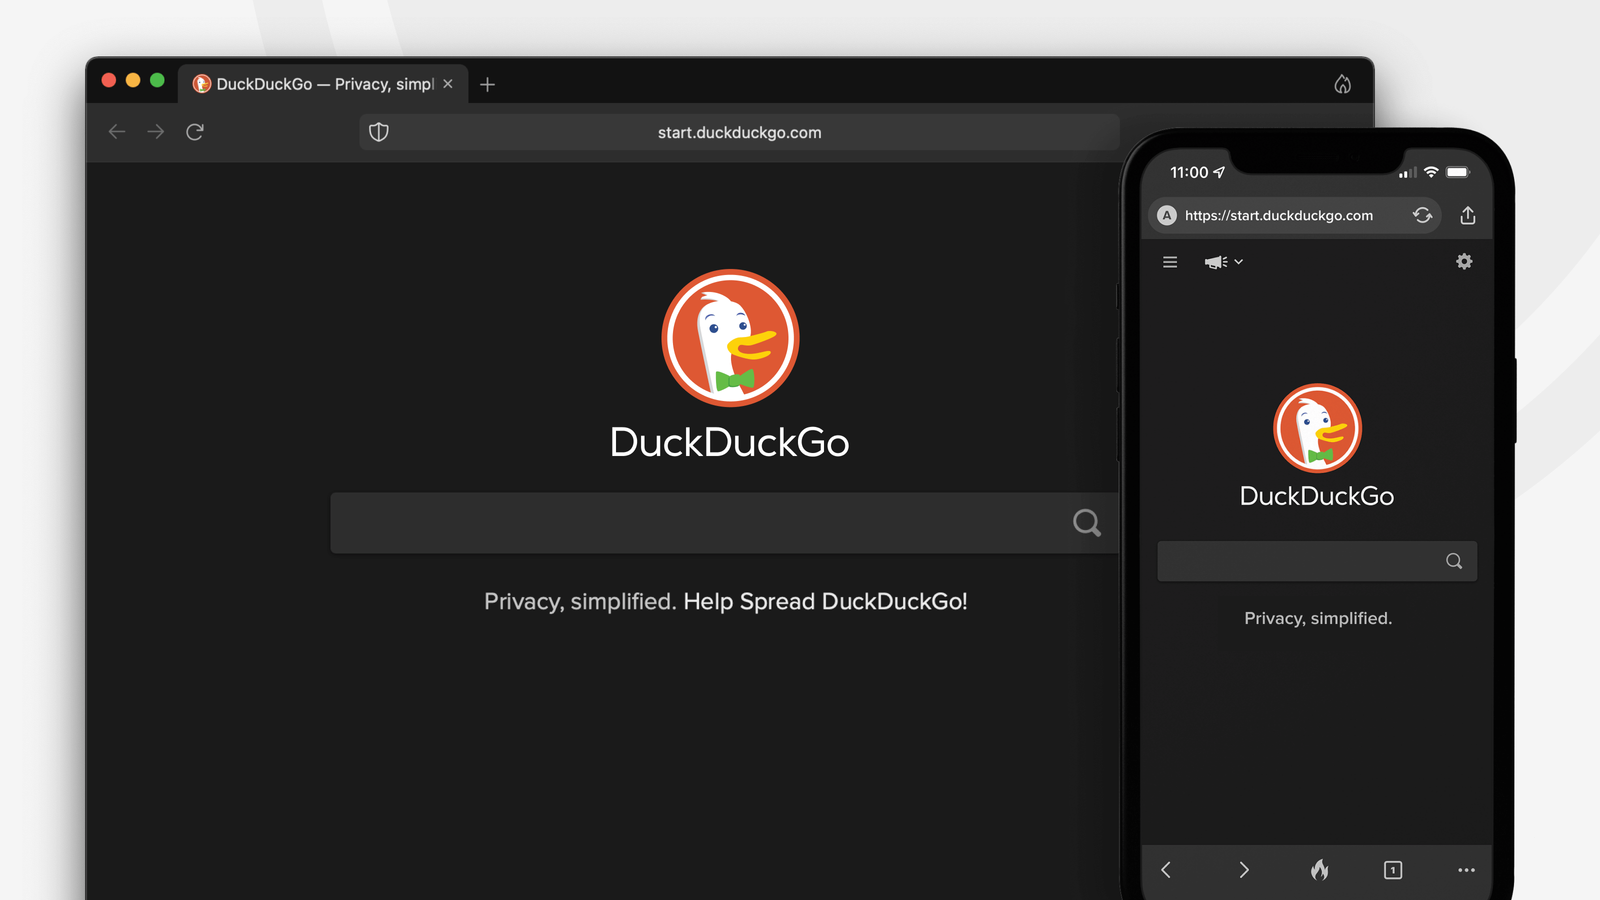 DuckDuckGo Web Browser - Credit DuckDuckGo